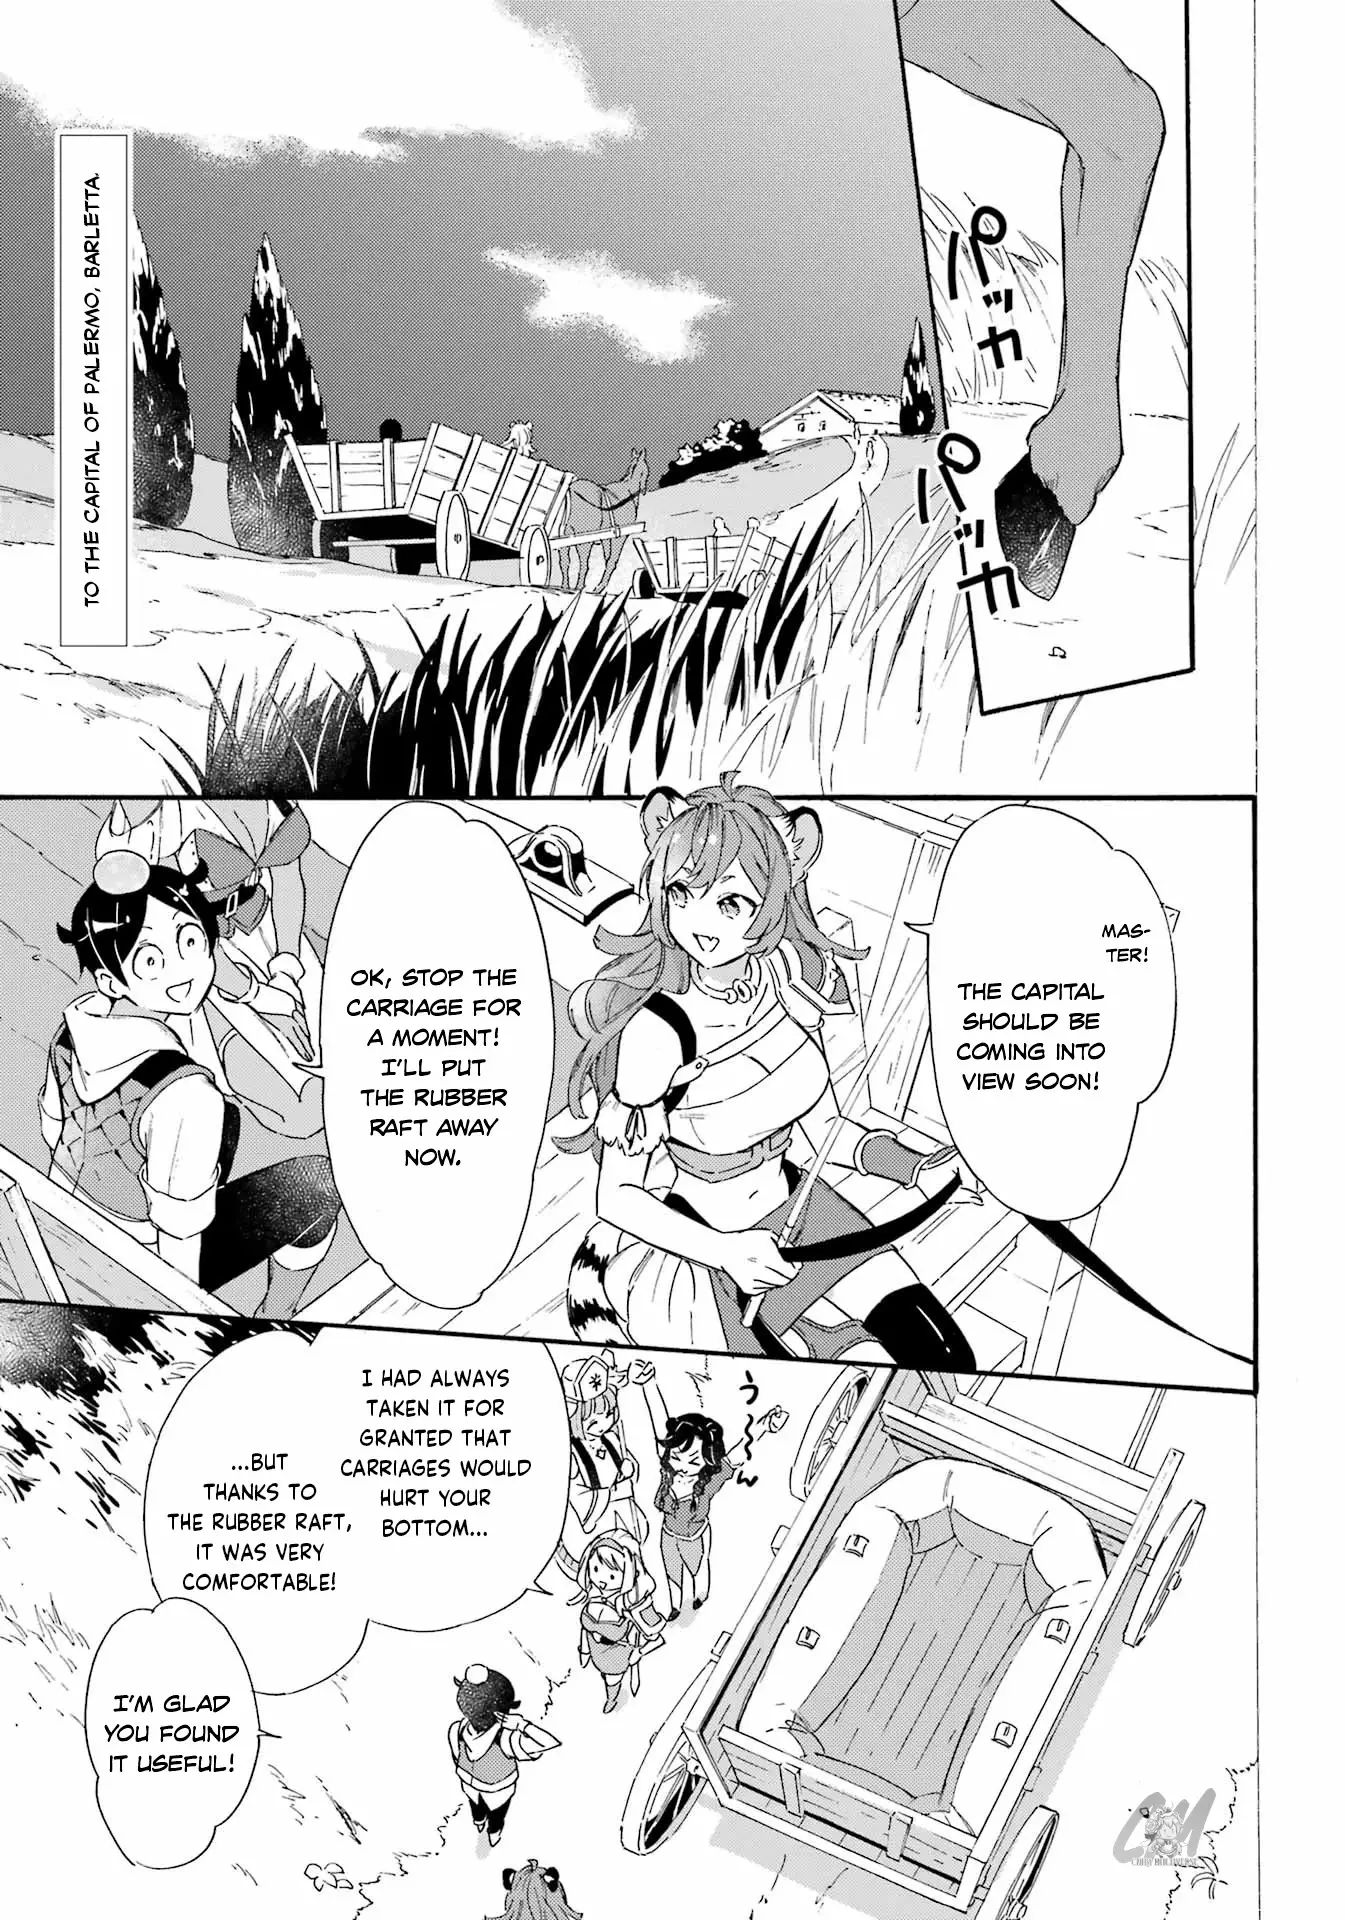 Mezase Gouka Kyakusen!! - 23 page 1-00182f0b